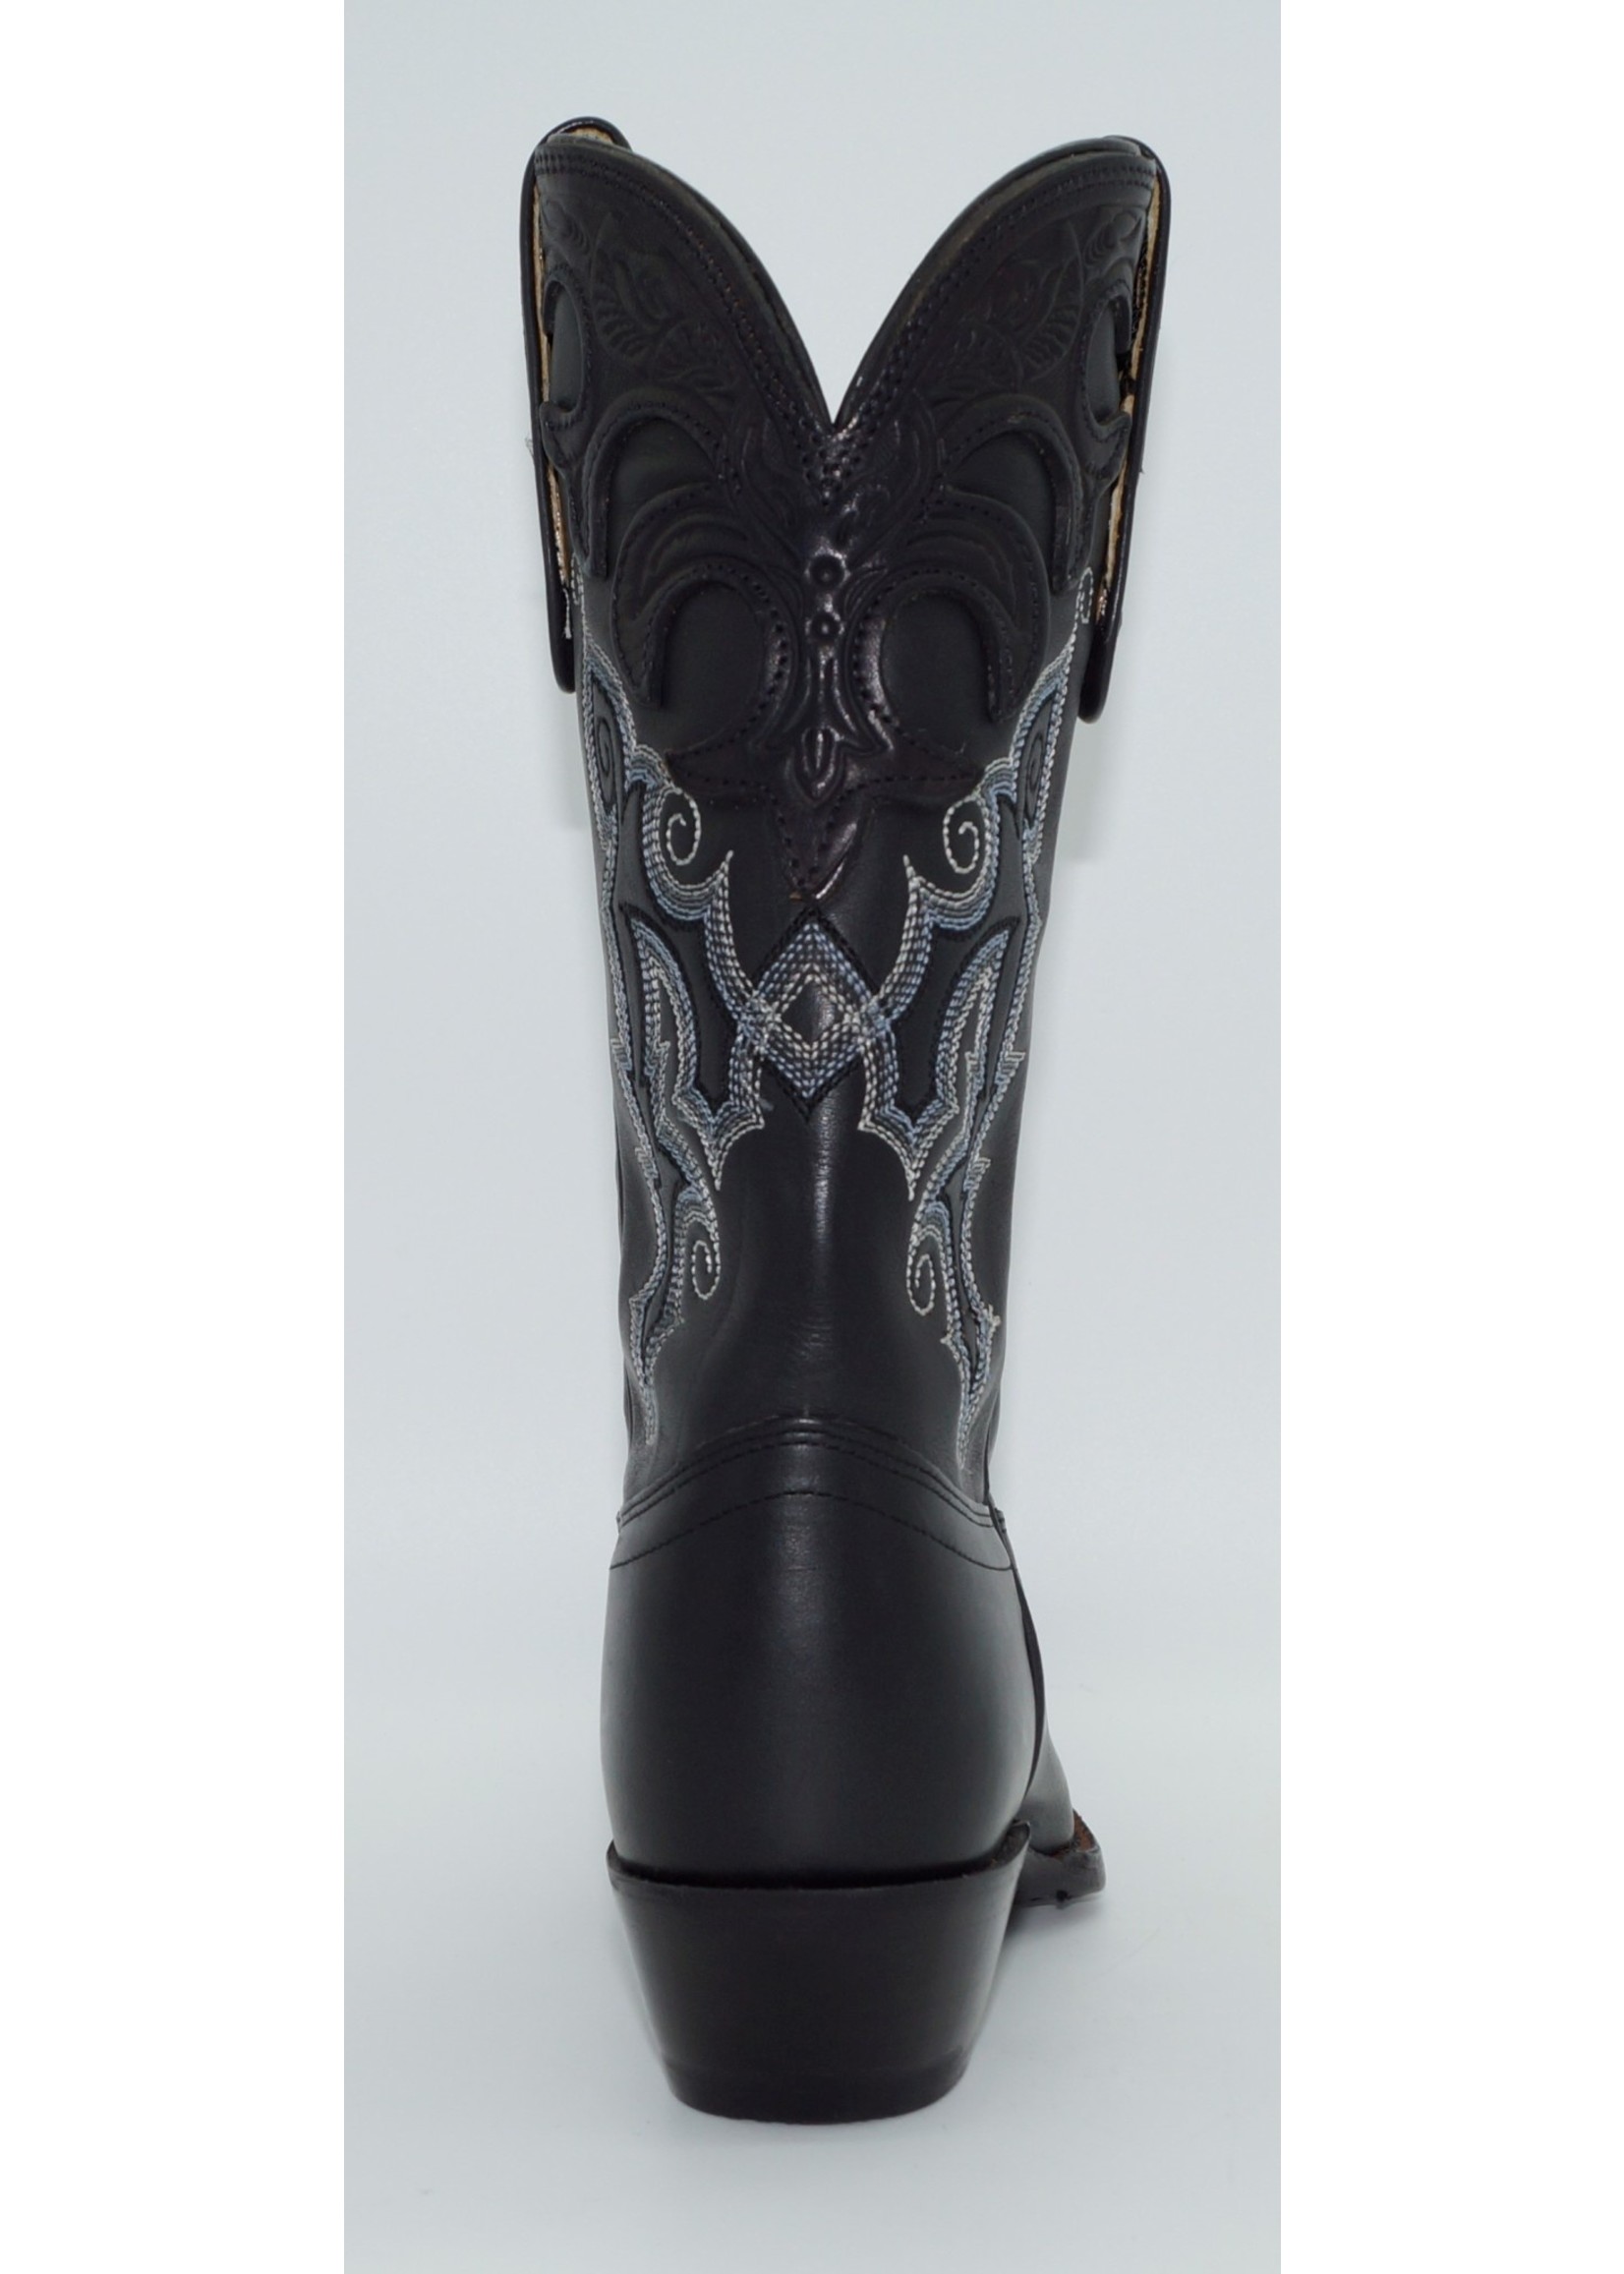 Tony Lama Ladies Vaquero Collection Western Boot VF6000